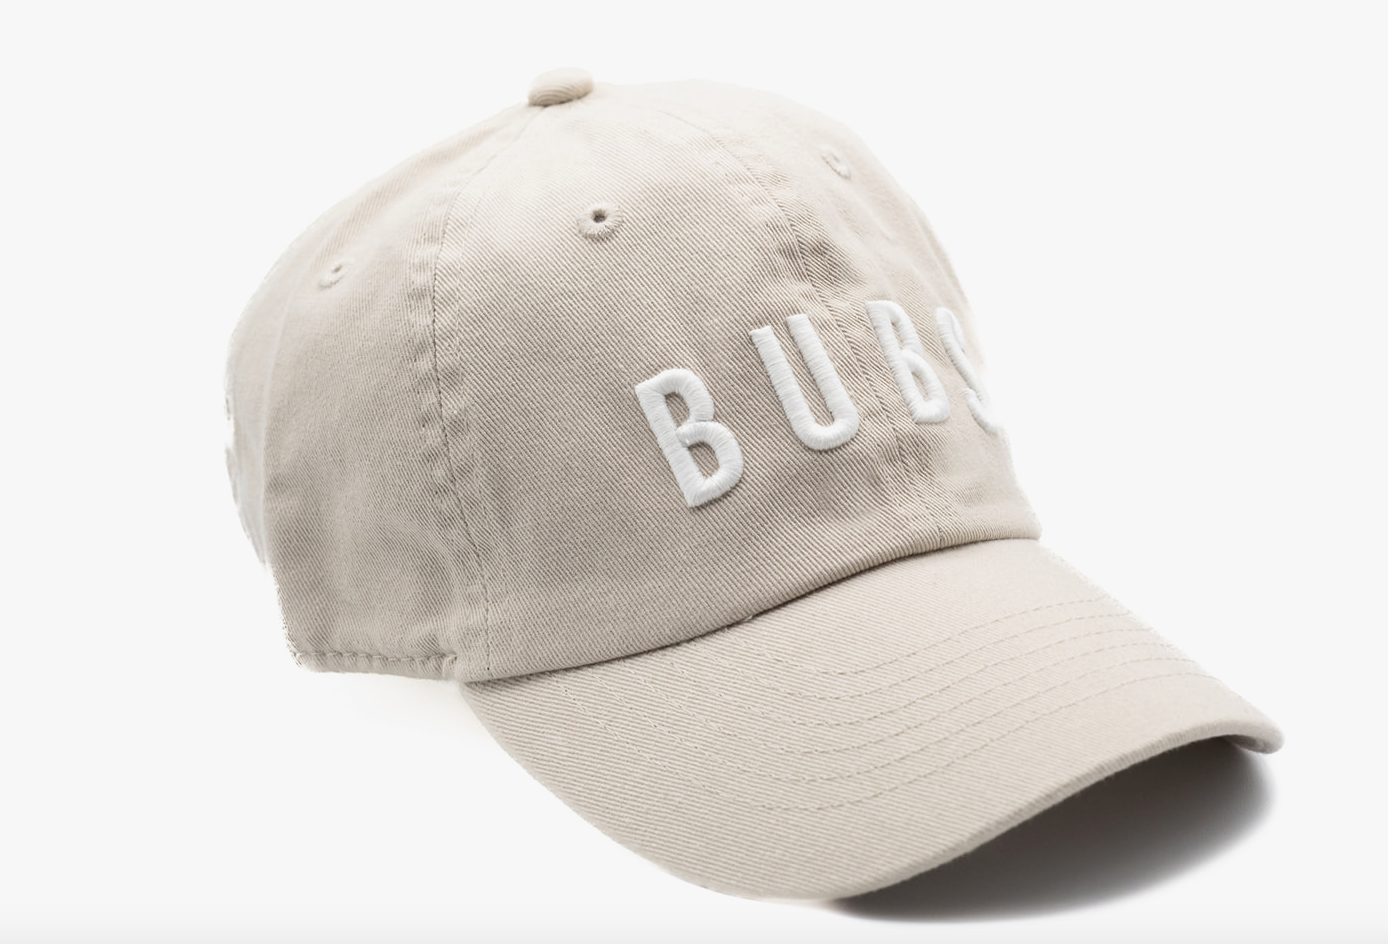 Dune Bubs Hat